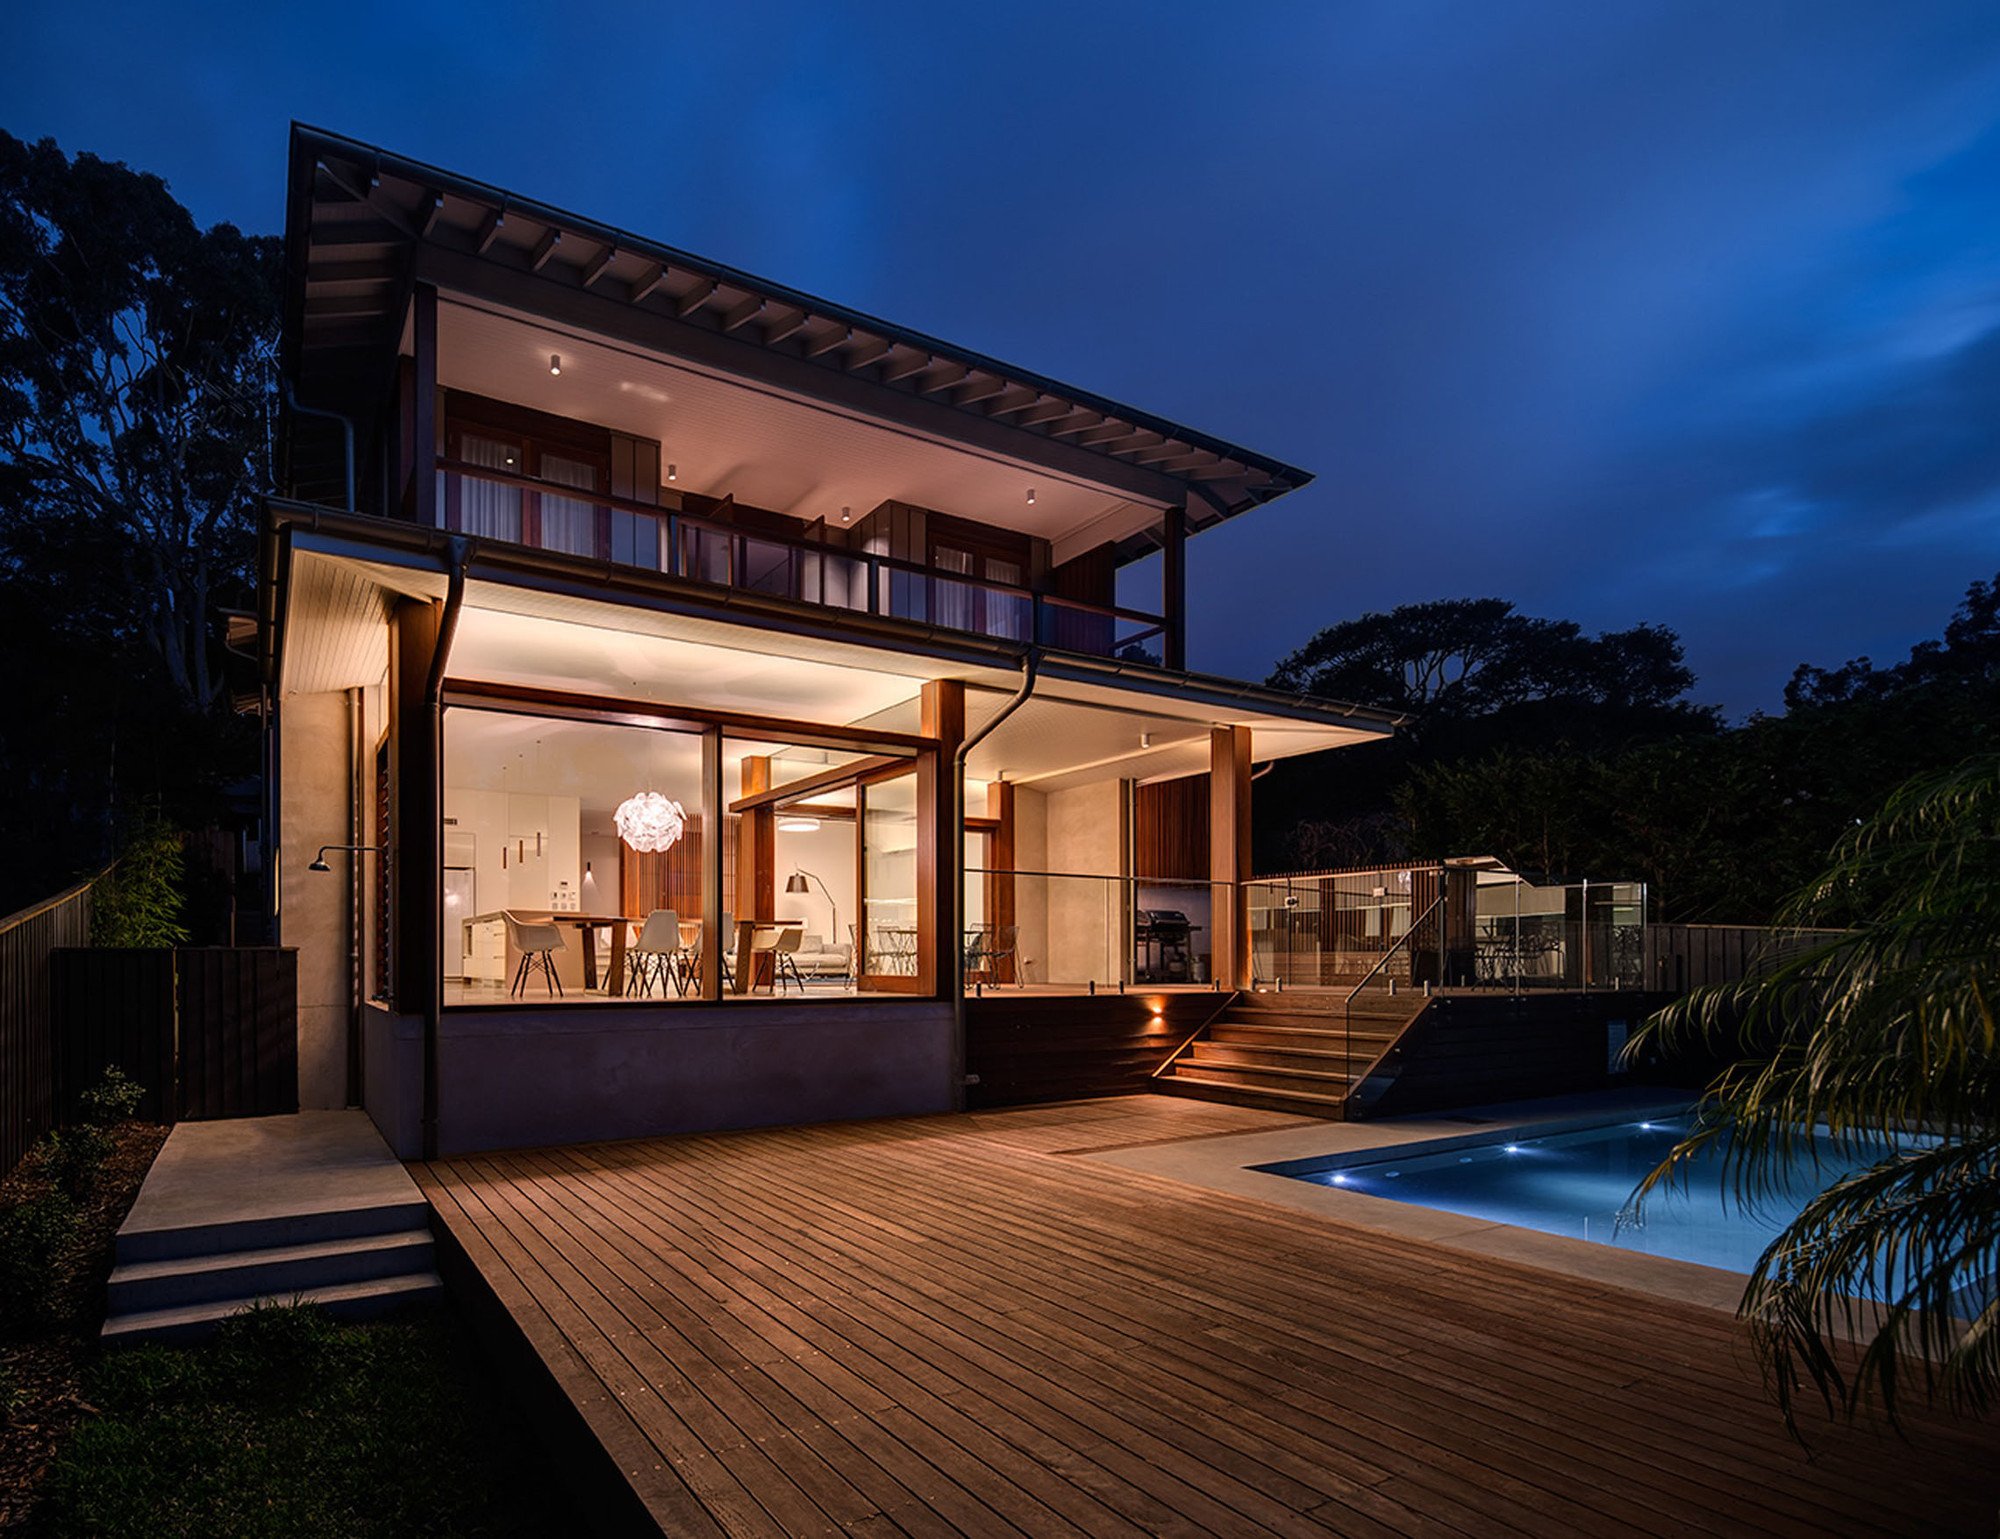 Key 2 house. Современный особняк Джоди Купера, Австралия. Красивый дом Сидни Австралия. Красивый современный дом. Австралийский стиль домов.